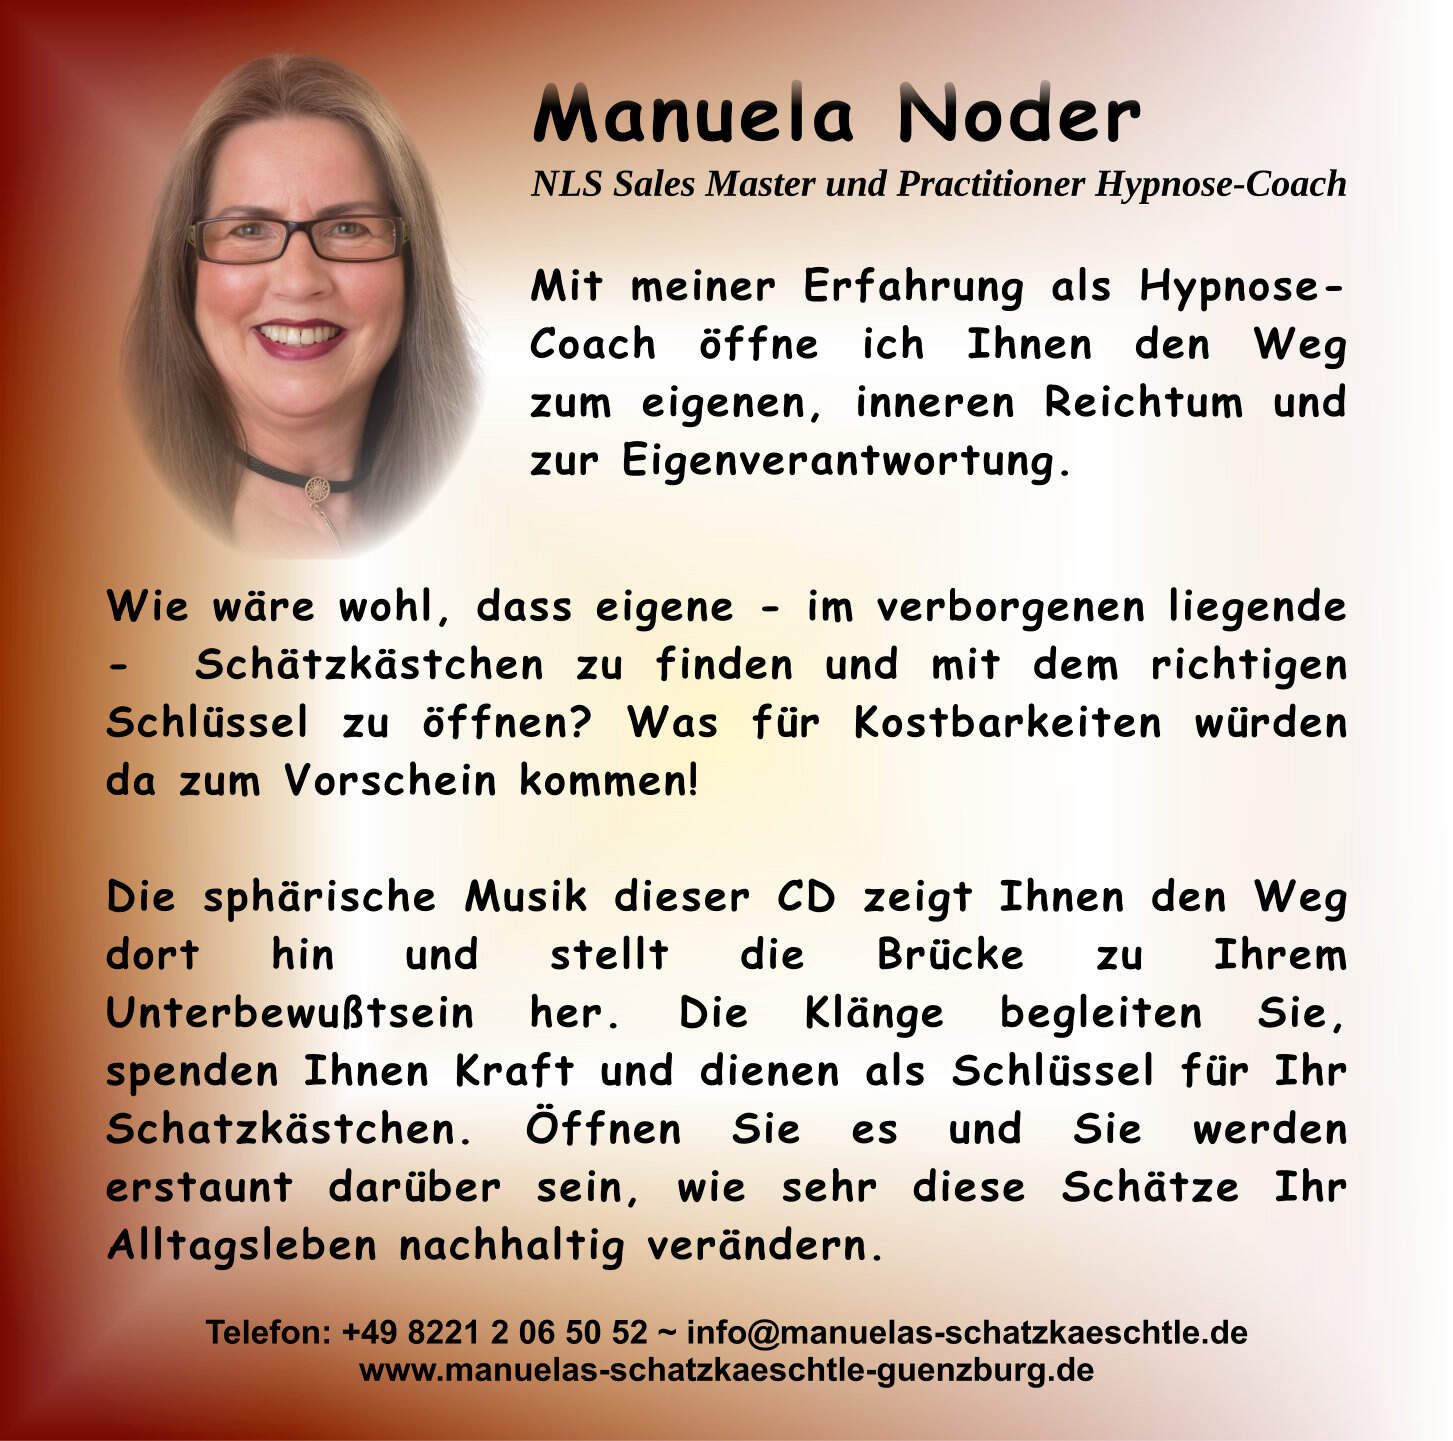 Manuela Noder Hypnose Cd Der Weg Zum Eigenen Schatzkastchen Wir In Gunzburg